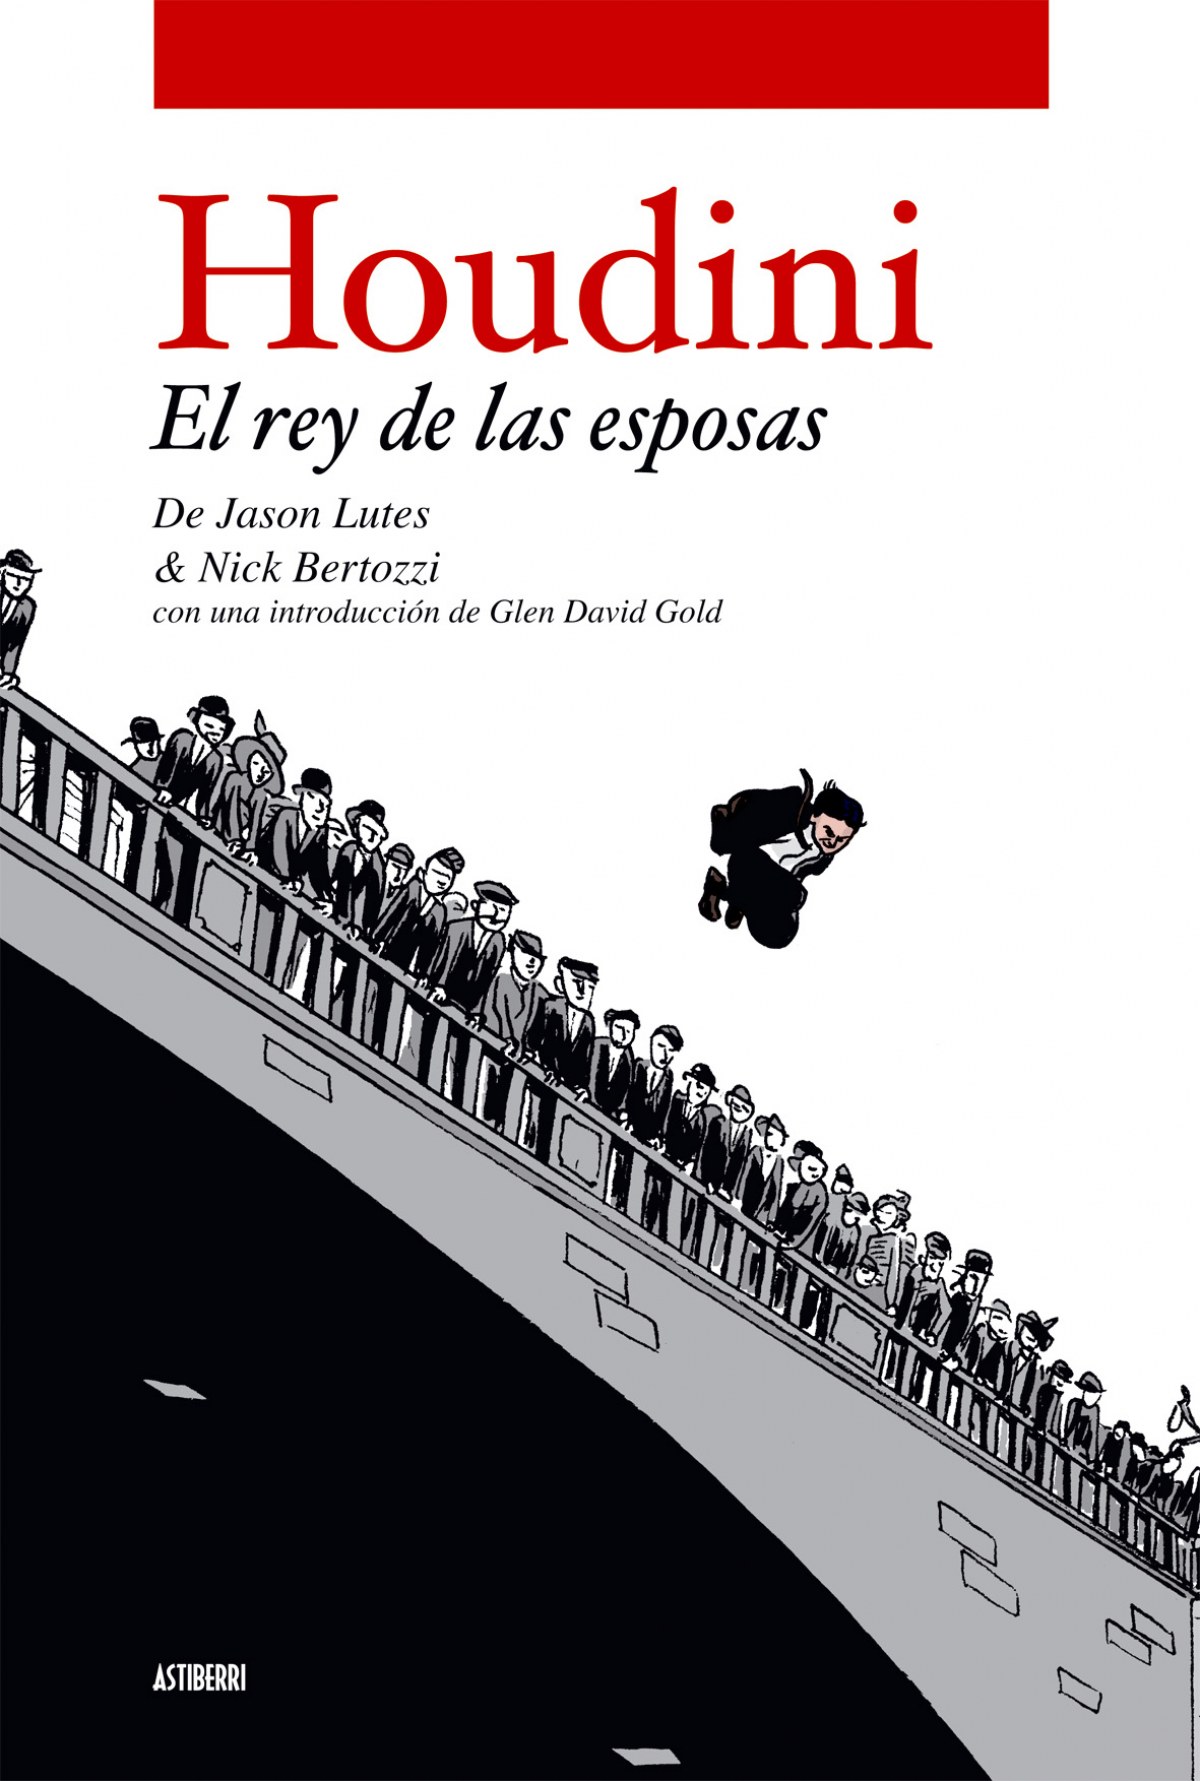 Houdini El rey de las esposas - Jason Lutes, Nick Bertozzi